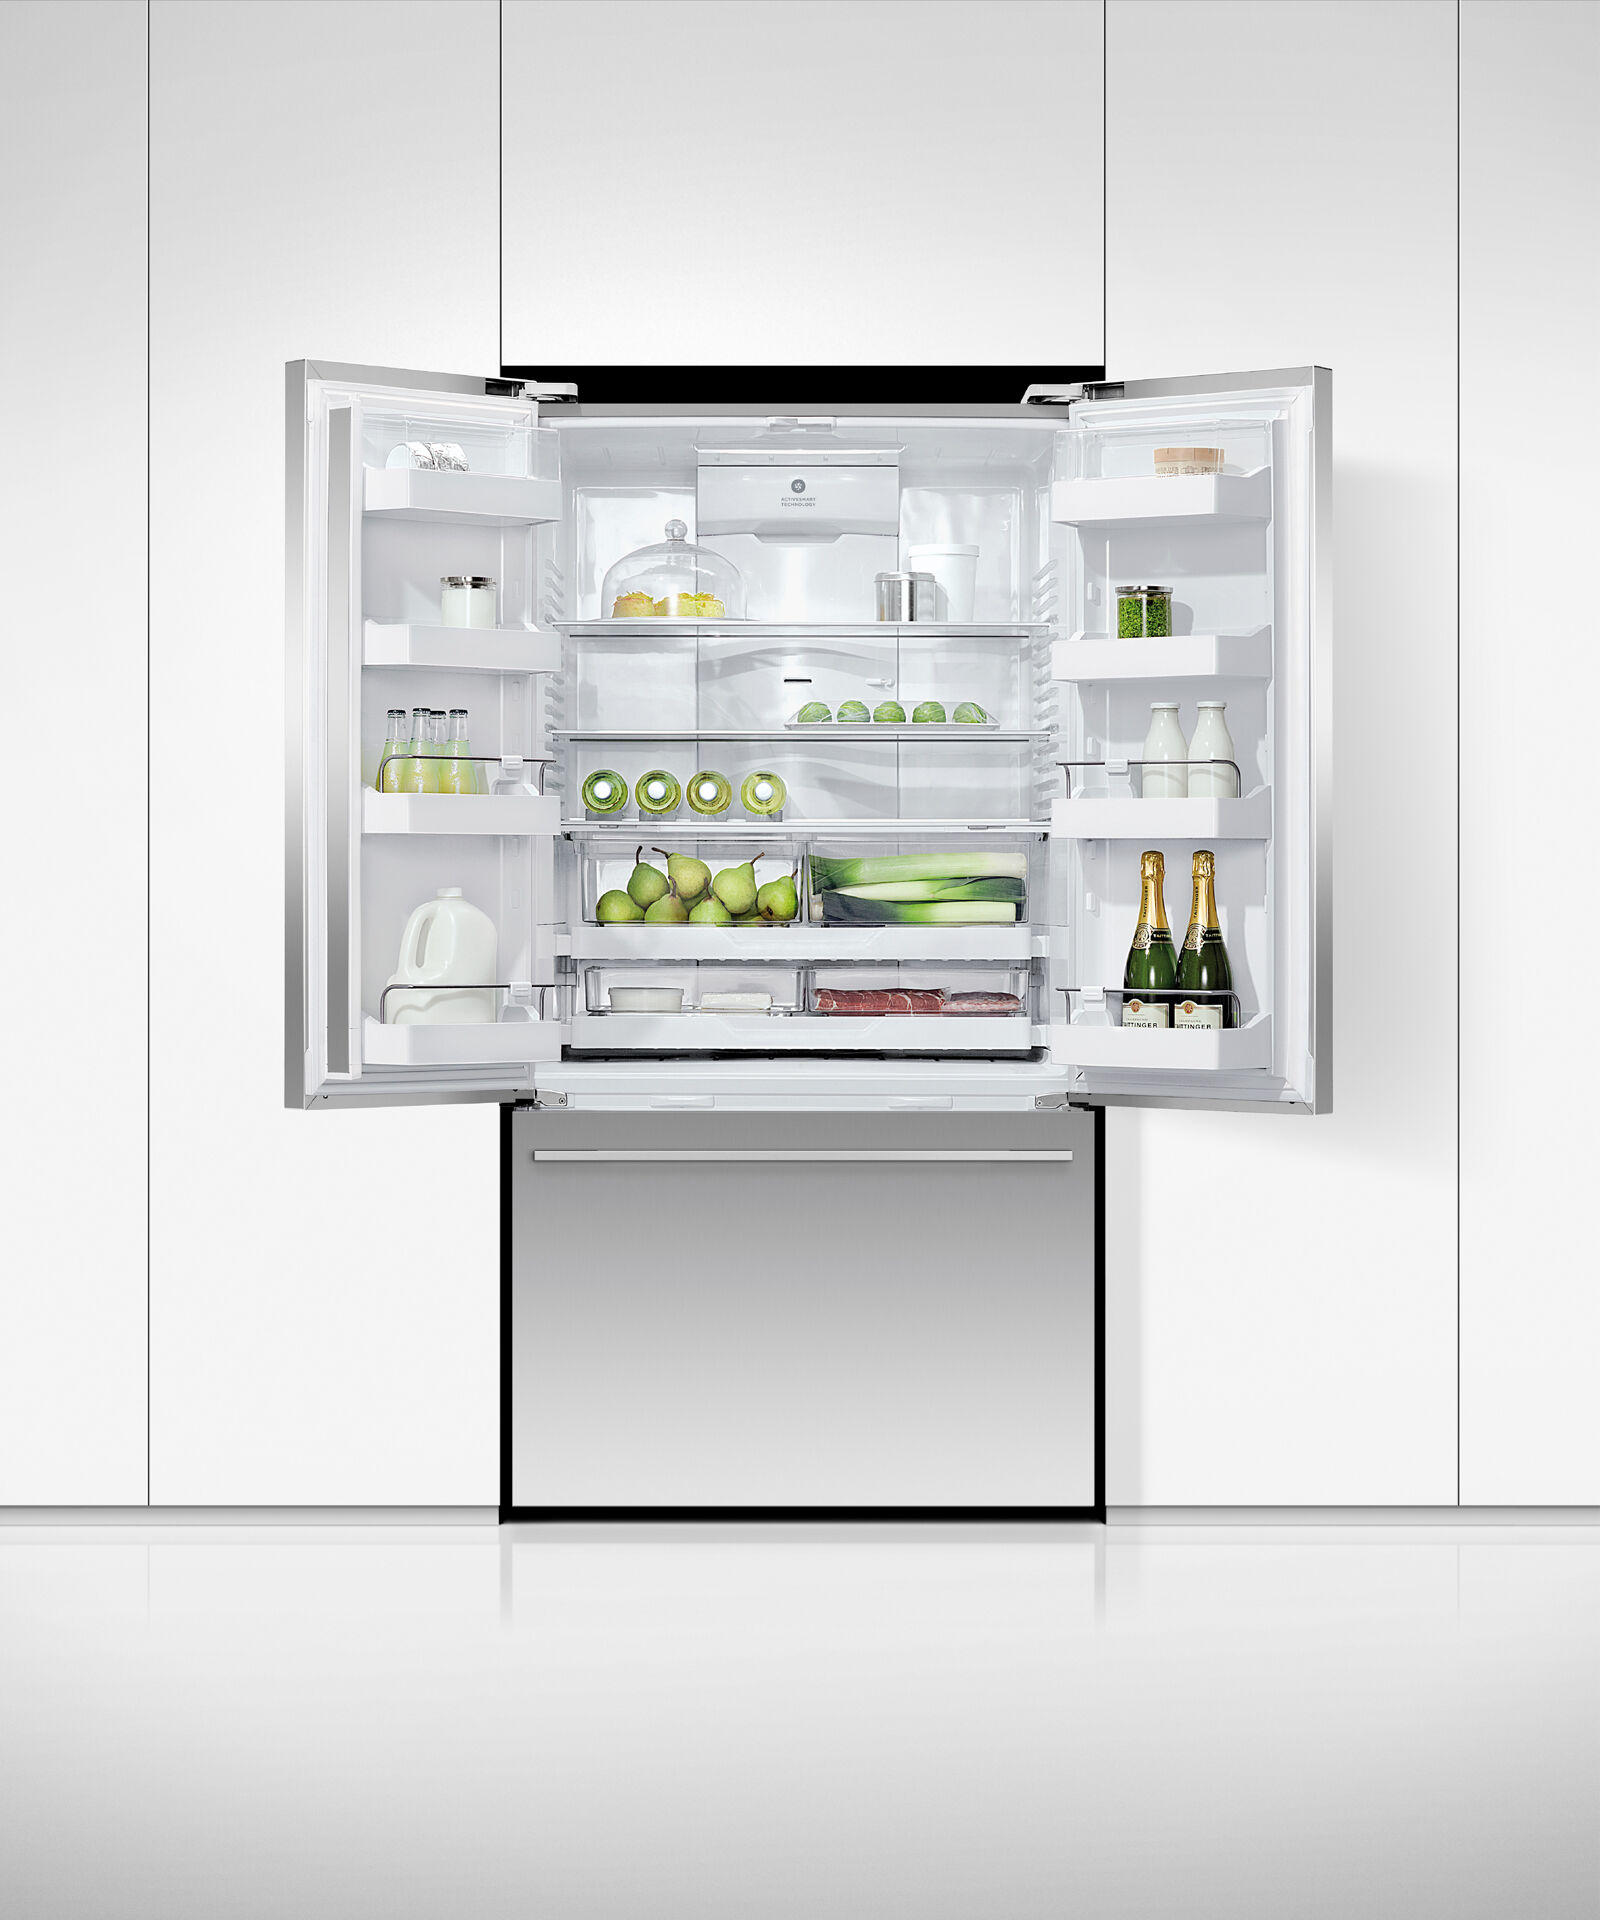 法式對開門雪櫃, 90cm, 自動製冰和冰水, gallery image 4.0